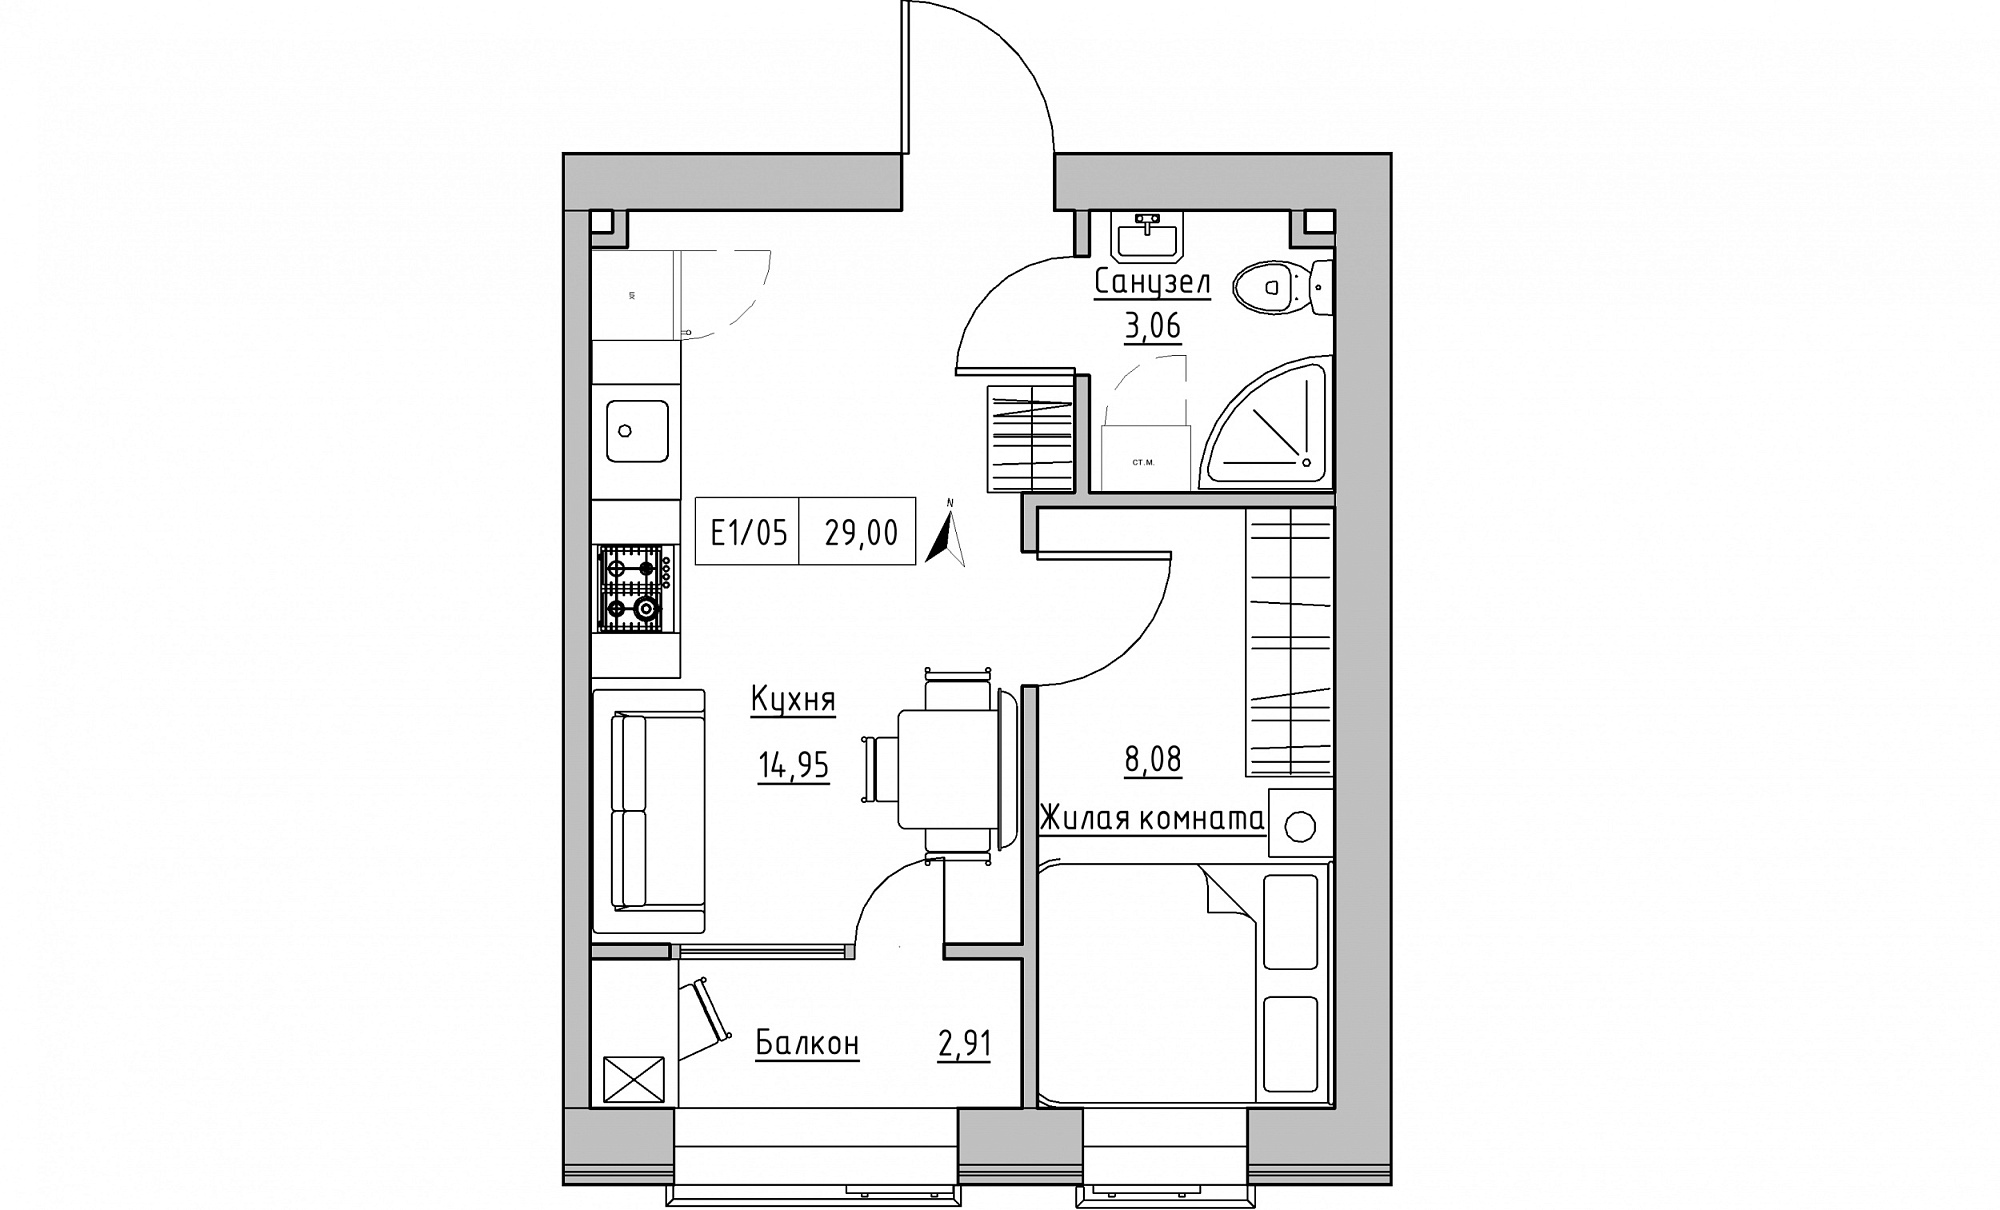 Планування 1-к квартира площею 29м2, KS-015-02/0009.